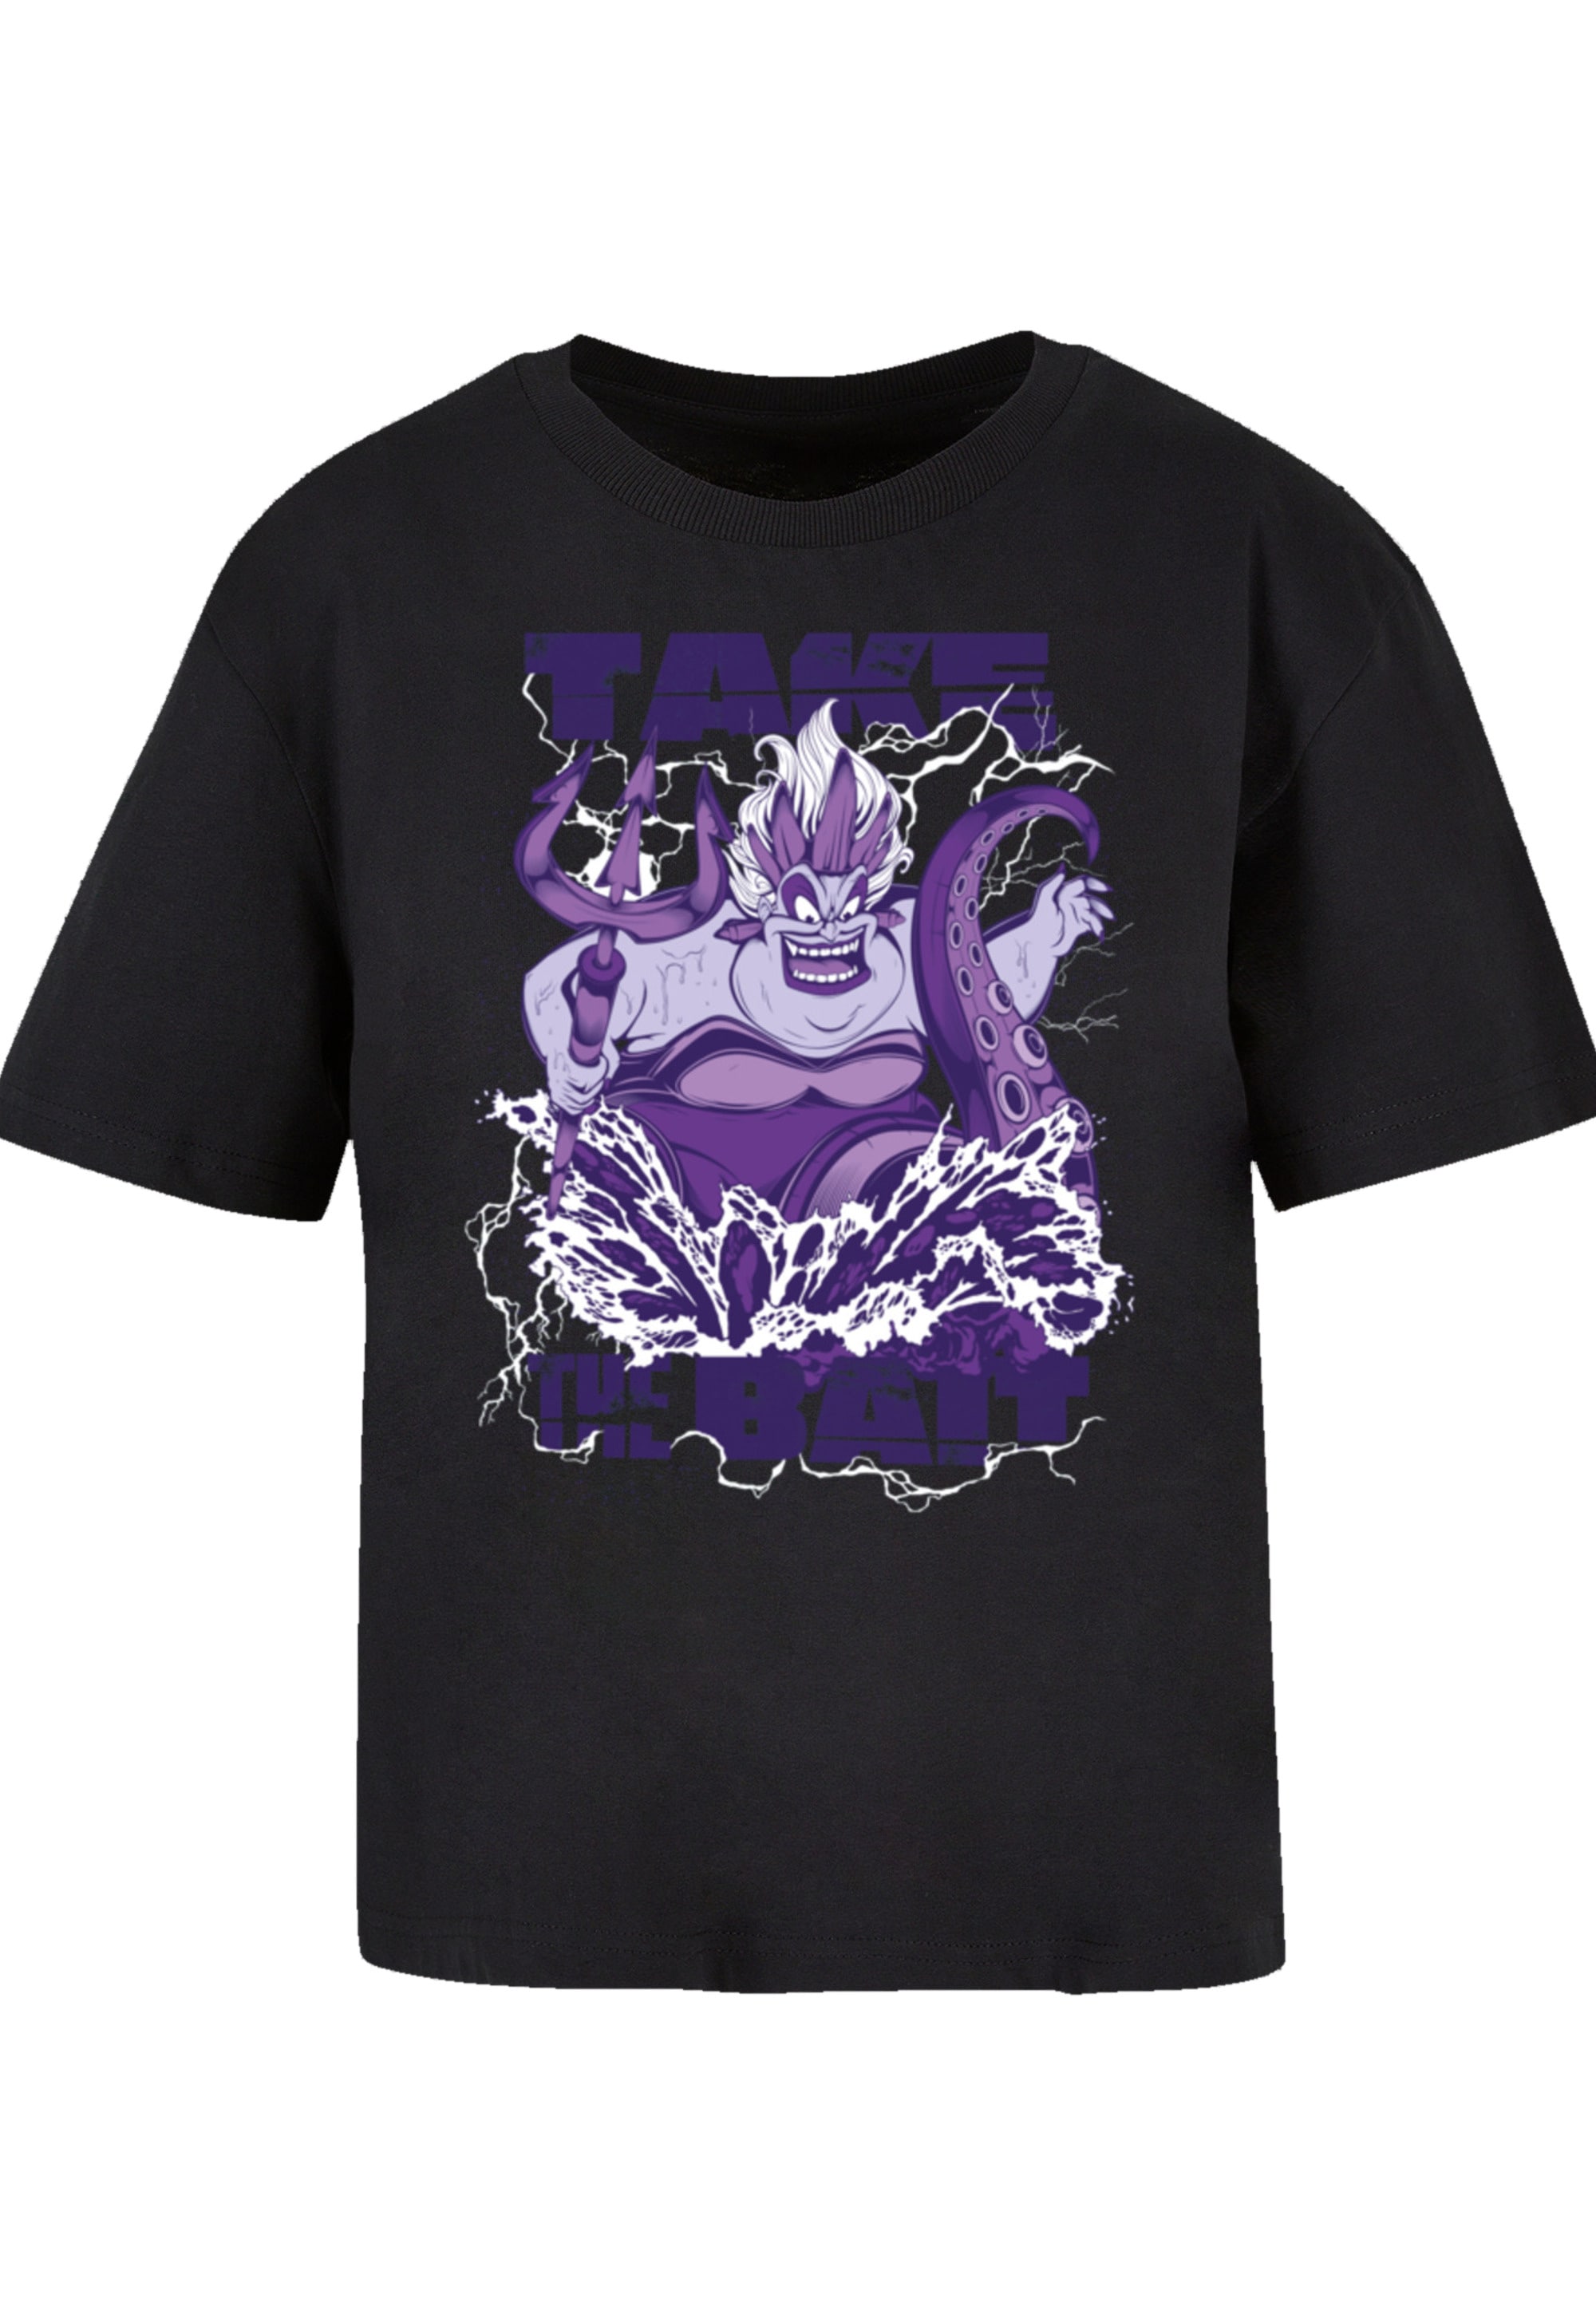 F4NT4STIC T-Shirt Bait«, The Ursula | Villains BAUR bestellen Premium Take »Disney Qualität